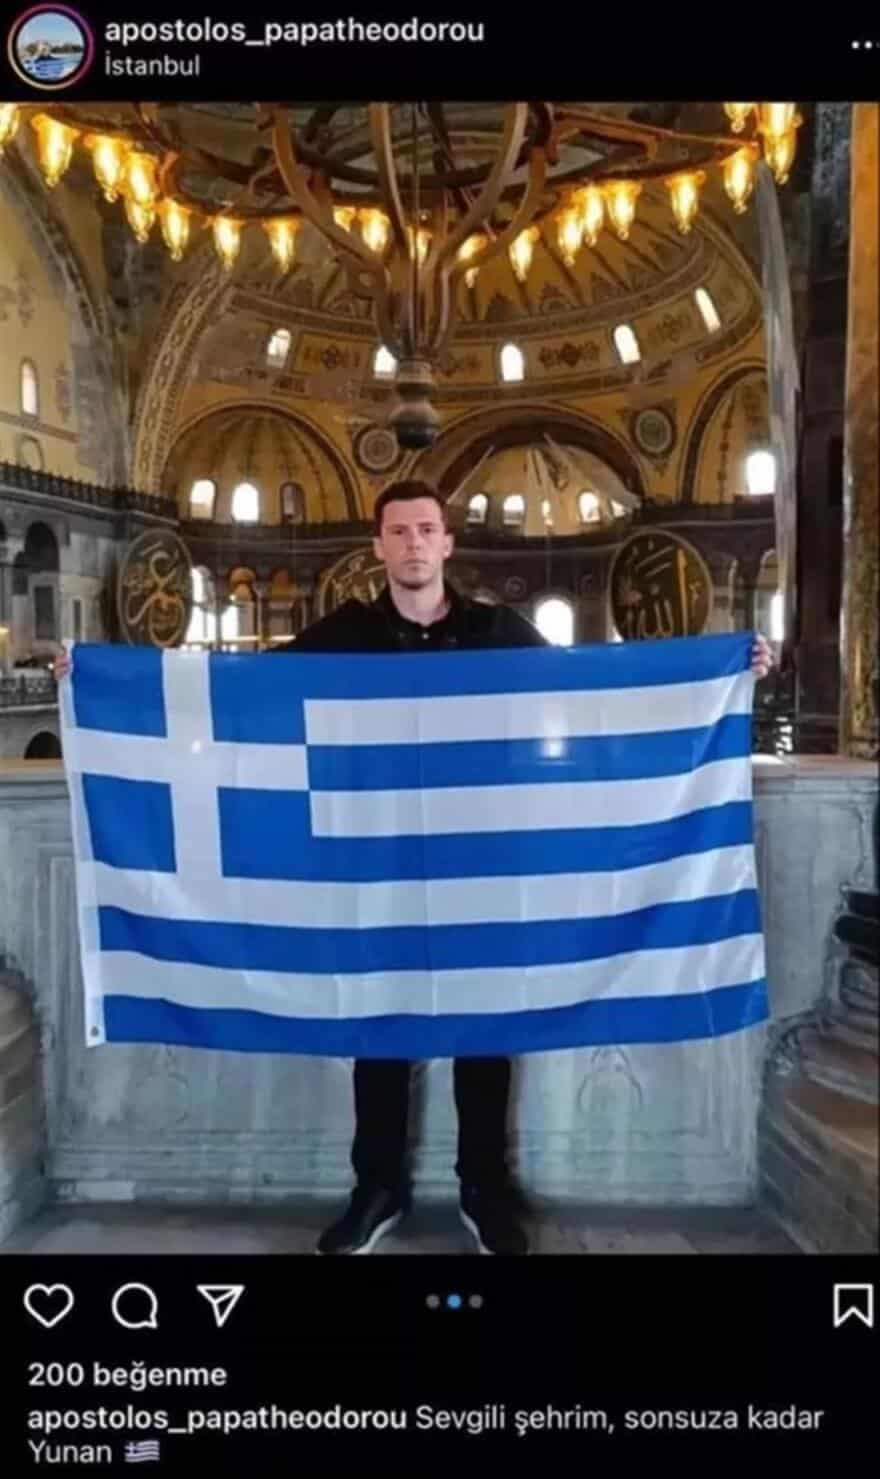 Σάλος στην Τουρκία: Έλληνας άνοιξε την ελληνική σημαία στην Αγία Σοφία